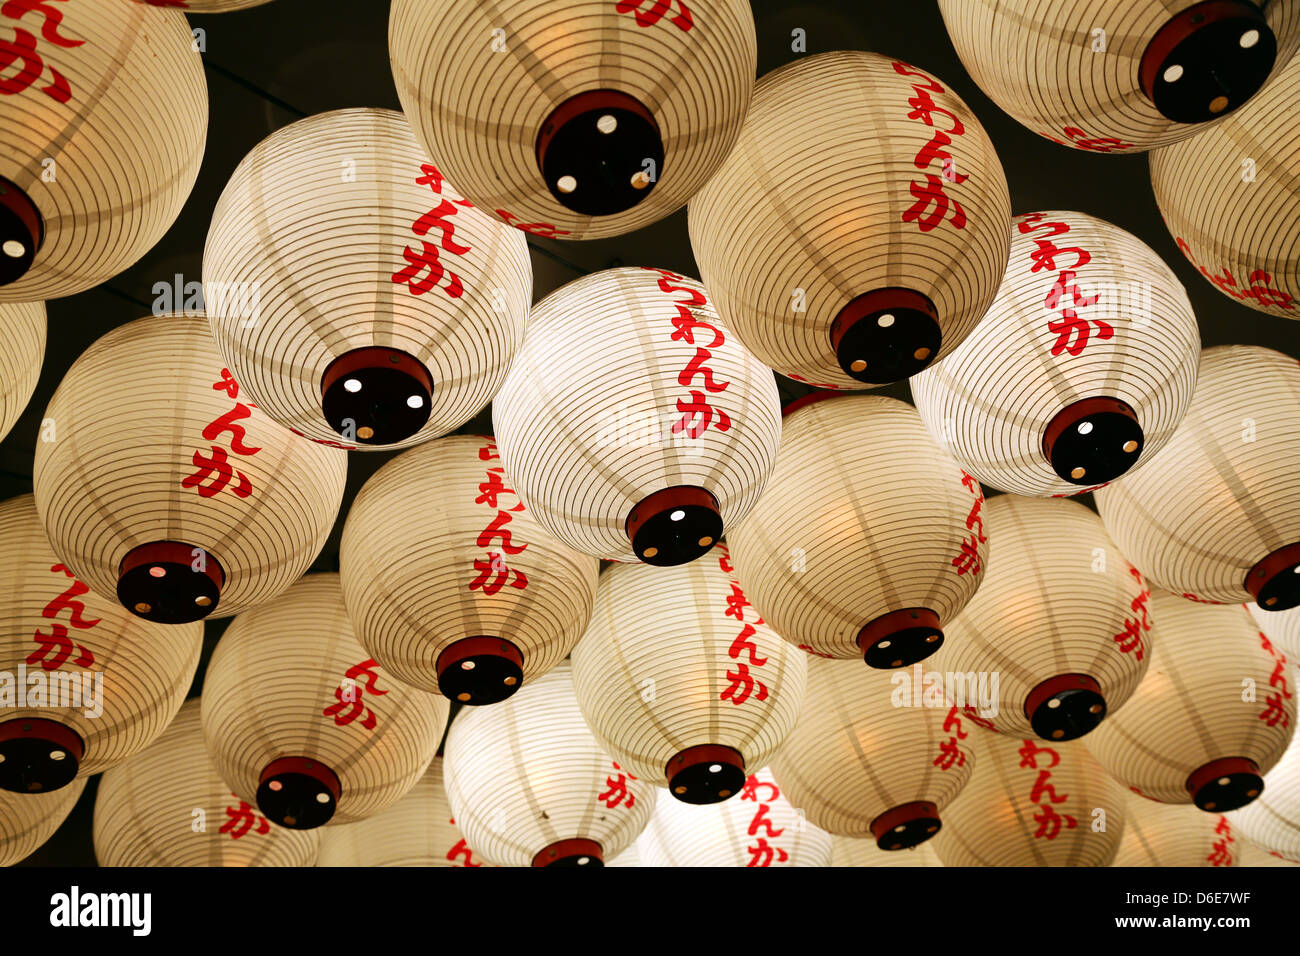 Night street scene of Japanese paper lanterns in Shinjuku, Tokyo, Japan Stock Photo